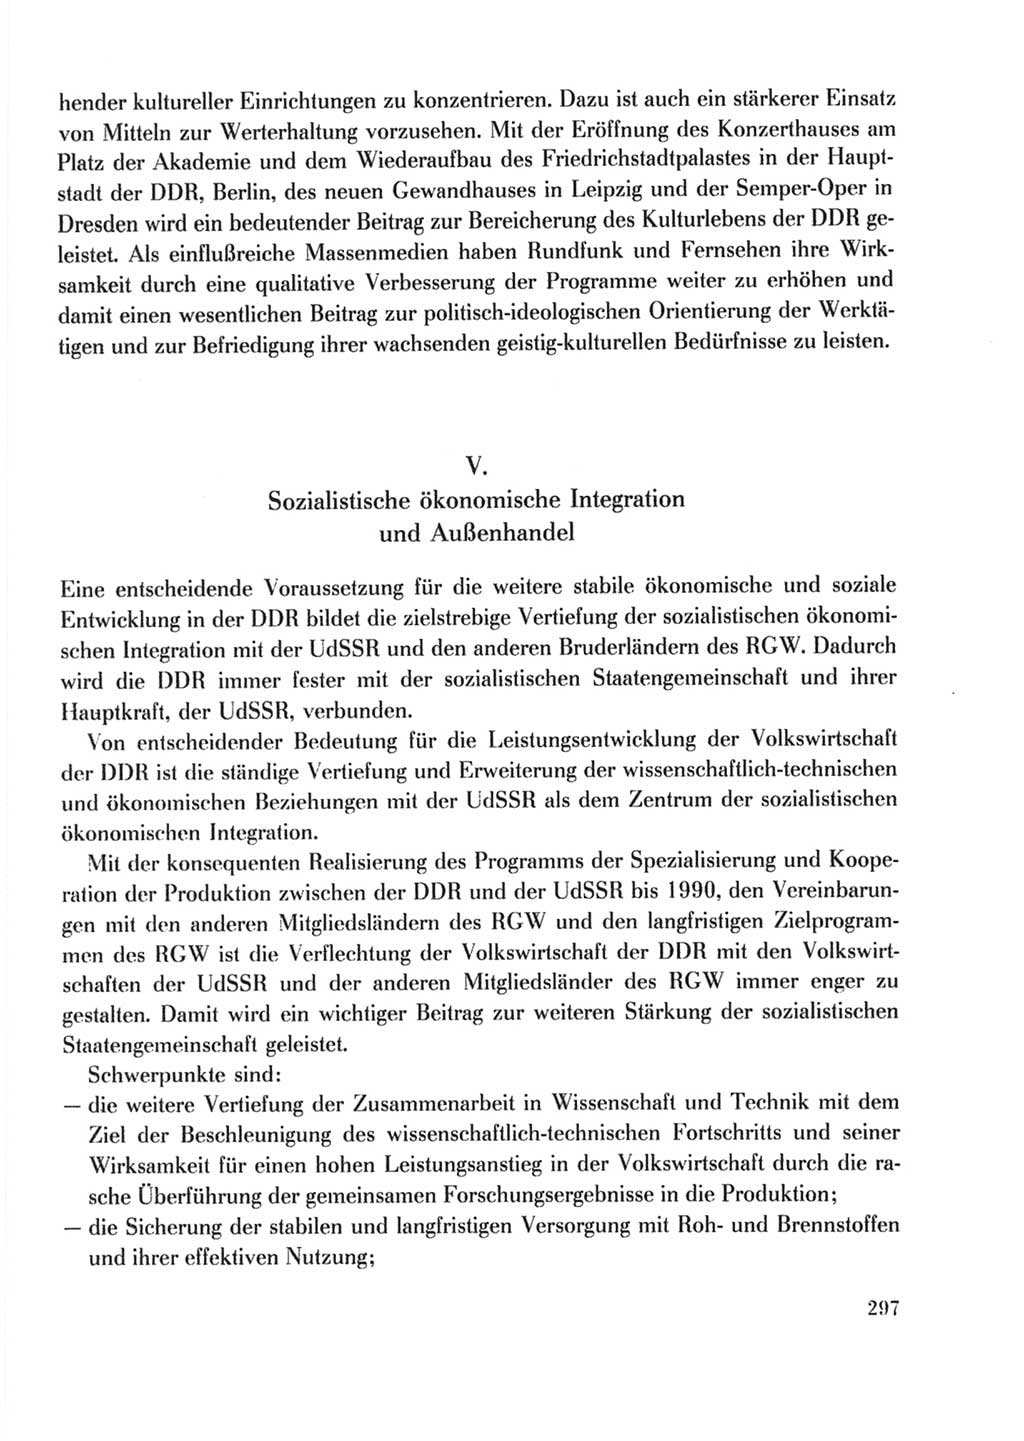 Protokoll der Verhandlungen des Ⅹ. Parteitages der Sozialistischen Einheitspartei Deutschlands (SED) [Deutsche Demokratische Republik (DDR)] 1981, Band 2, Seite 297 (Prot. Verh. Ⅹ. PT SED DDR 1981, Bd. 2, S. 297)